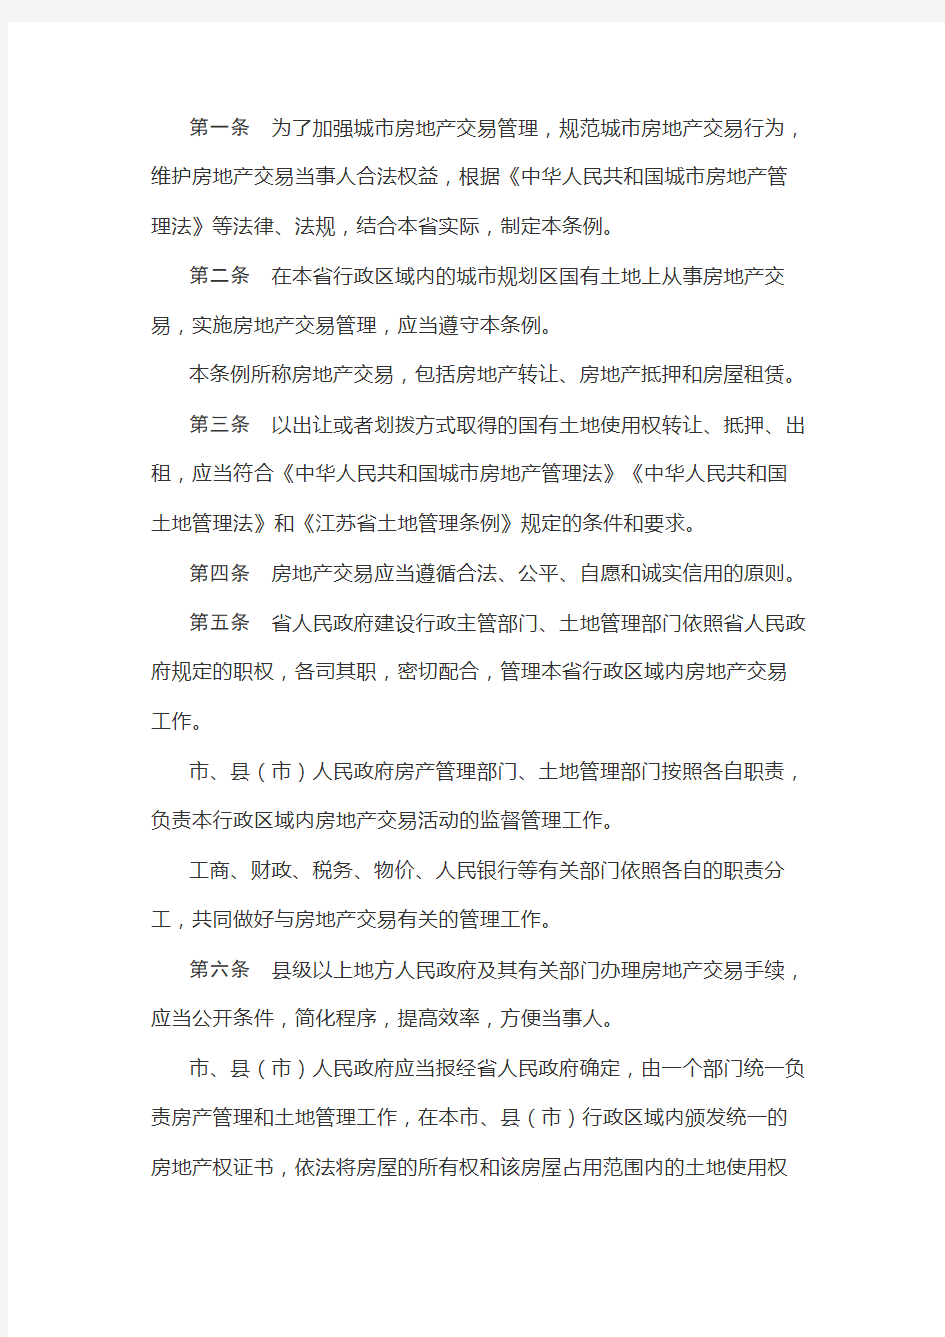 江苏省城市房地产交易管理条例(2018年版)